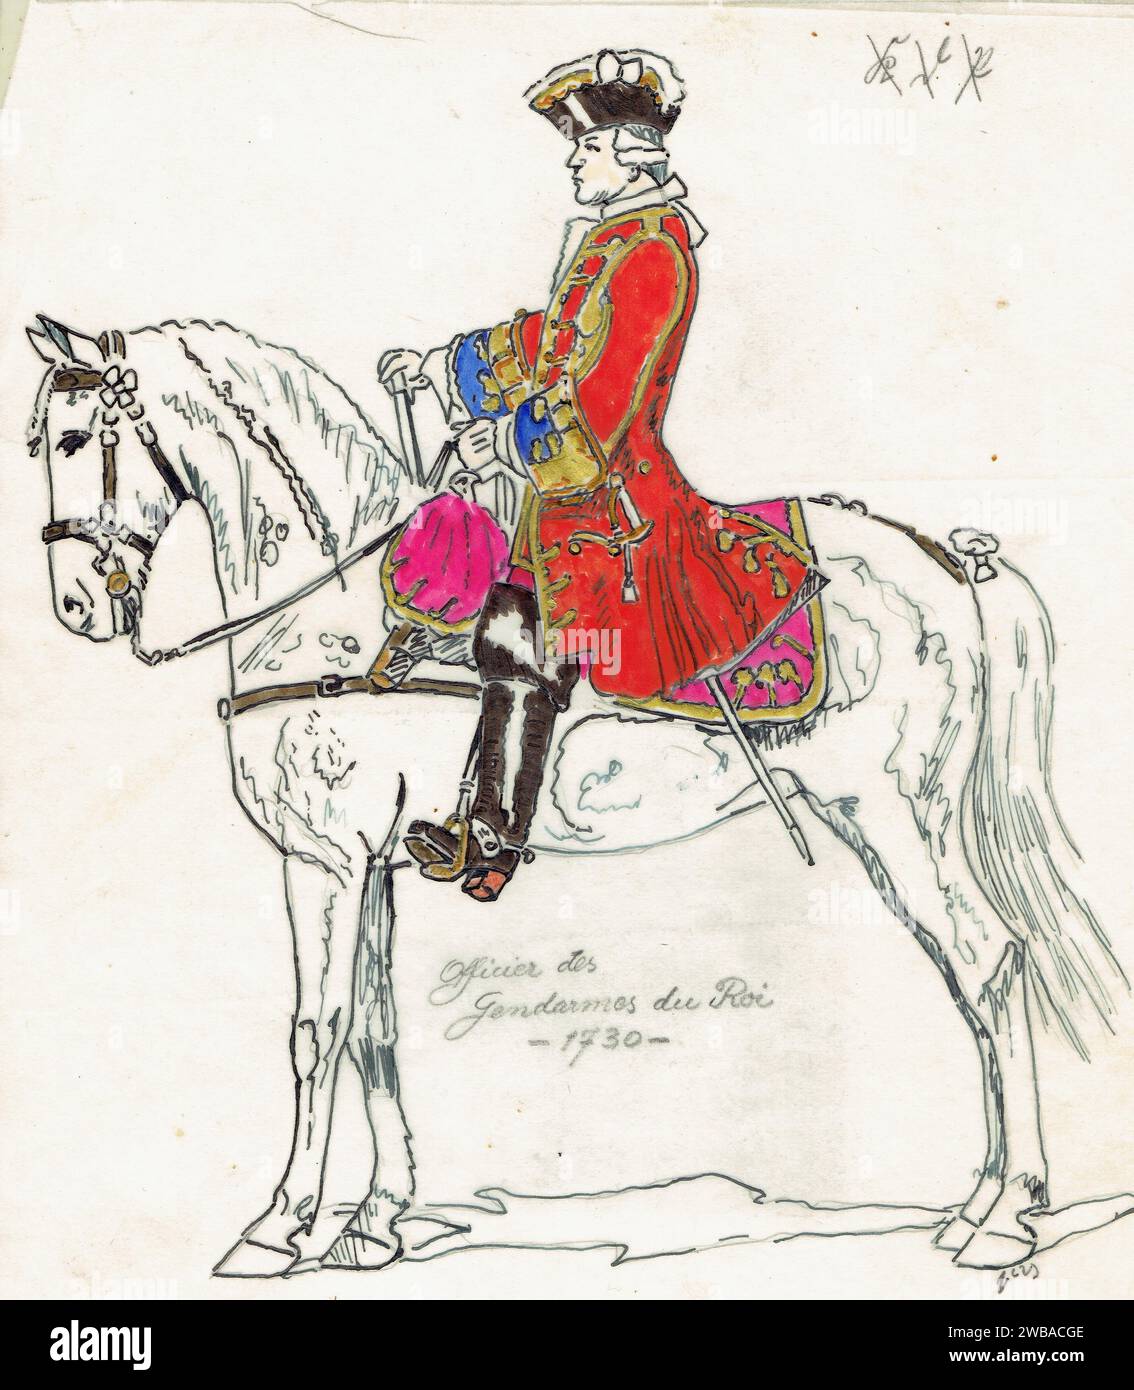 Officier des Gens D'armes du Roy, 1730 Stock Photo